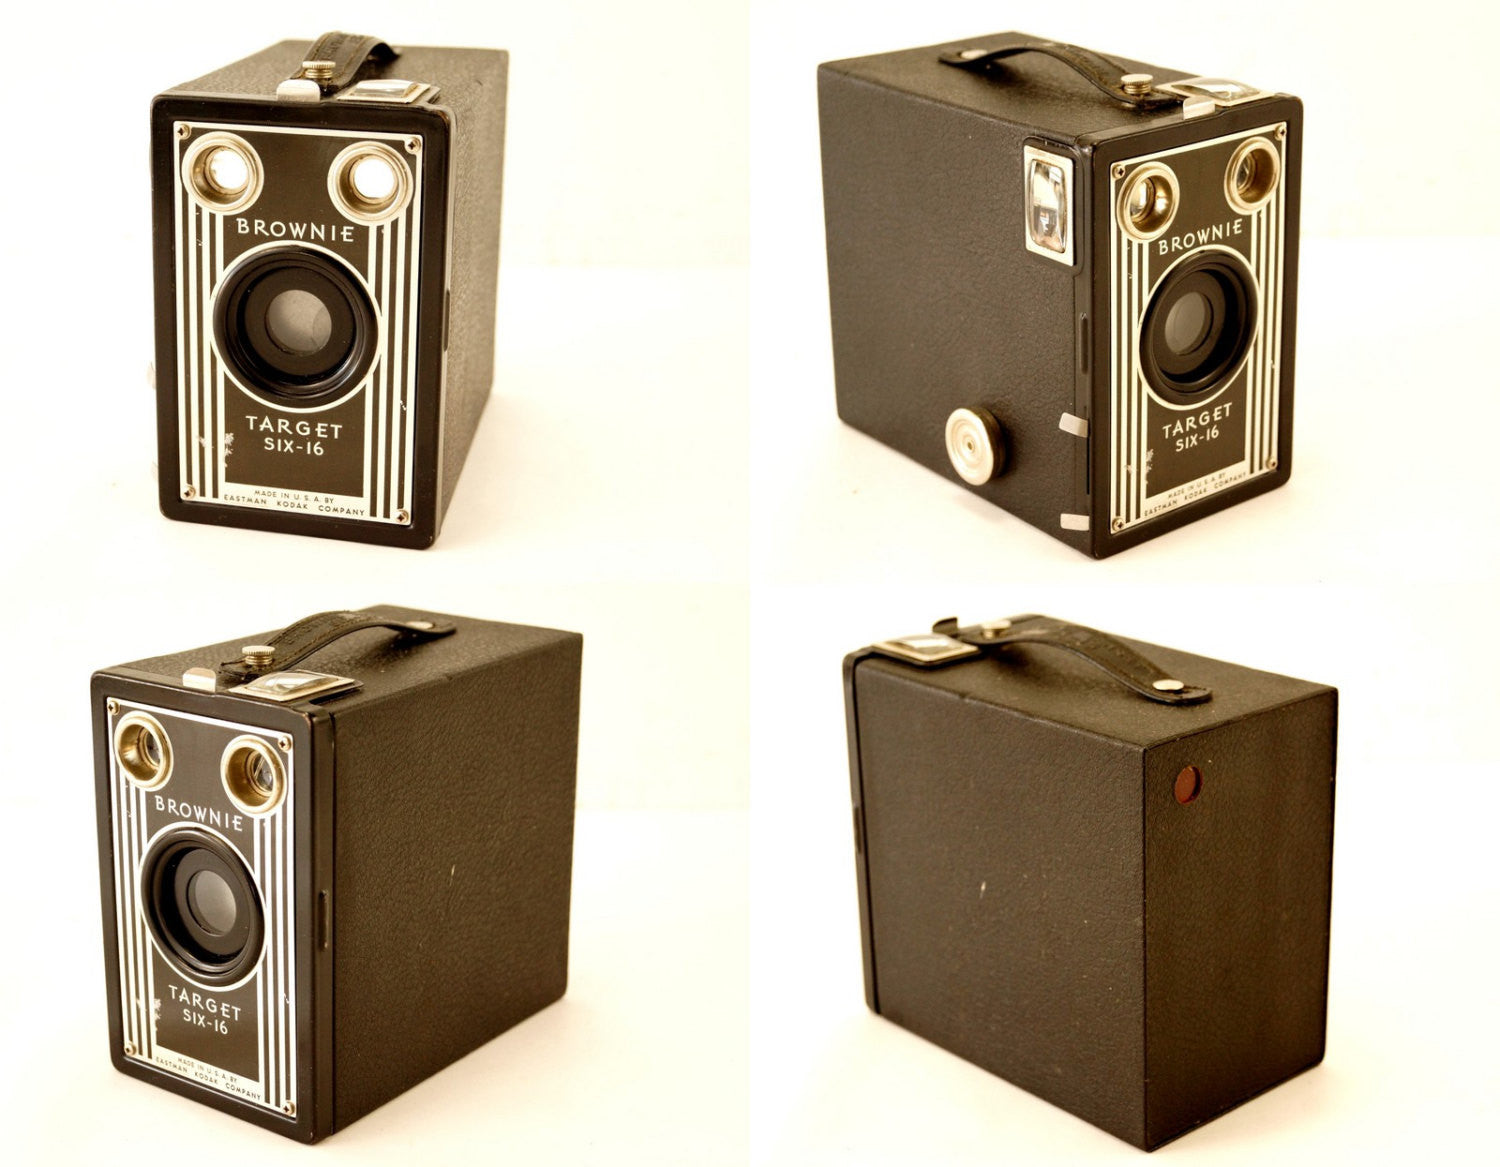 Vintage Kodak Brownie Target Six-16 Camera (c.1946